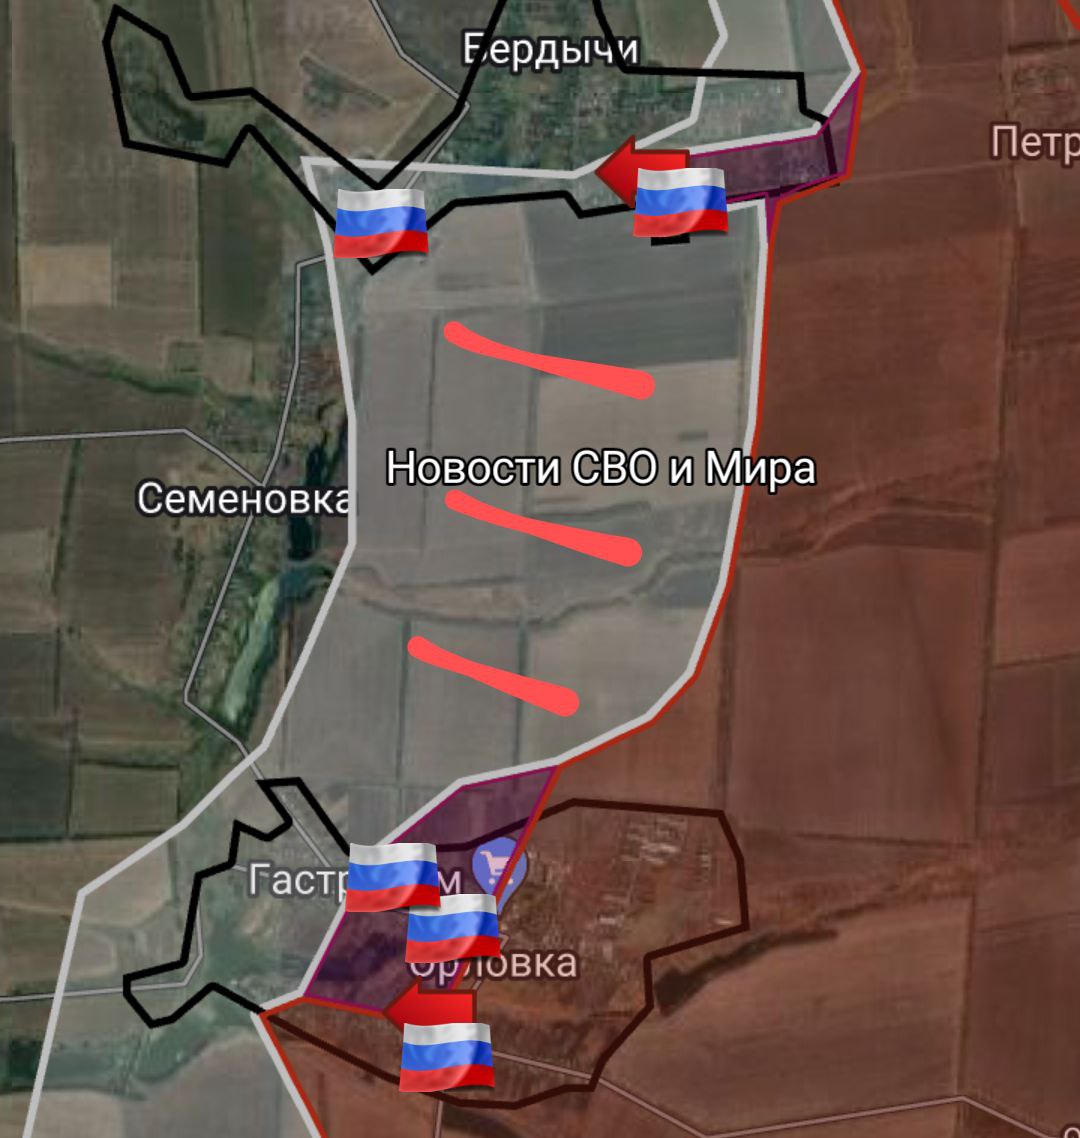 ВСУ отступили из серой зоны между селами Бердычи и Орловка